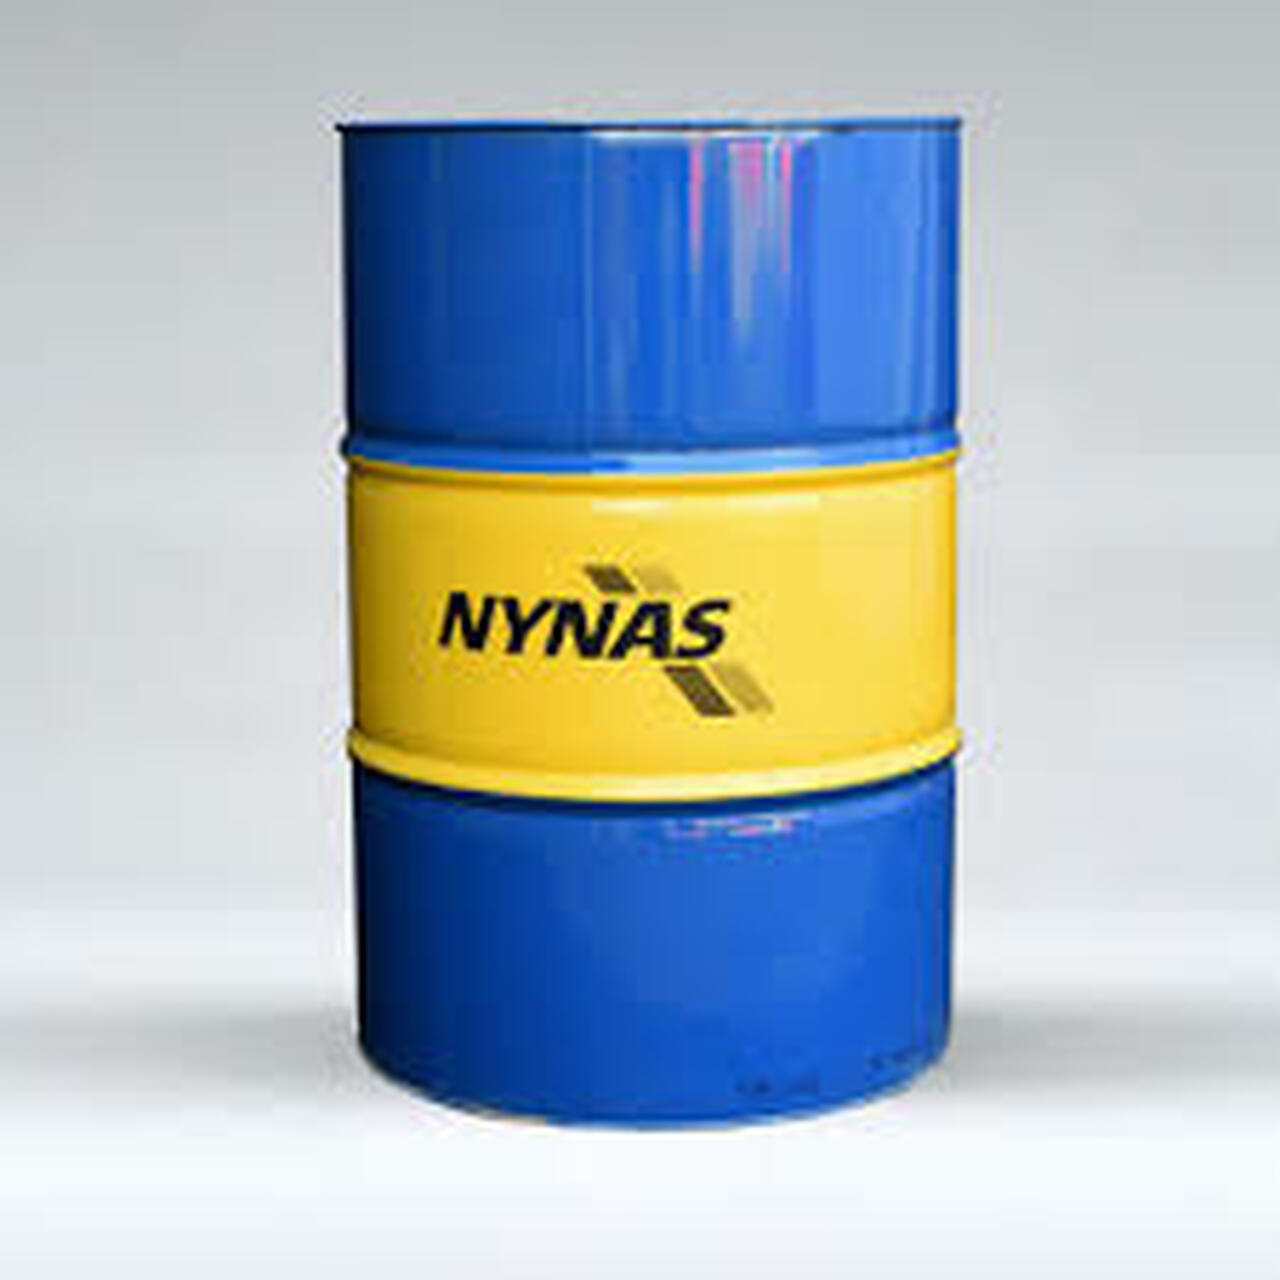 distributor-of-nynas-transformer-oil-image